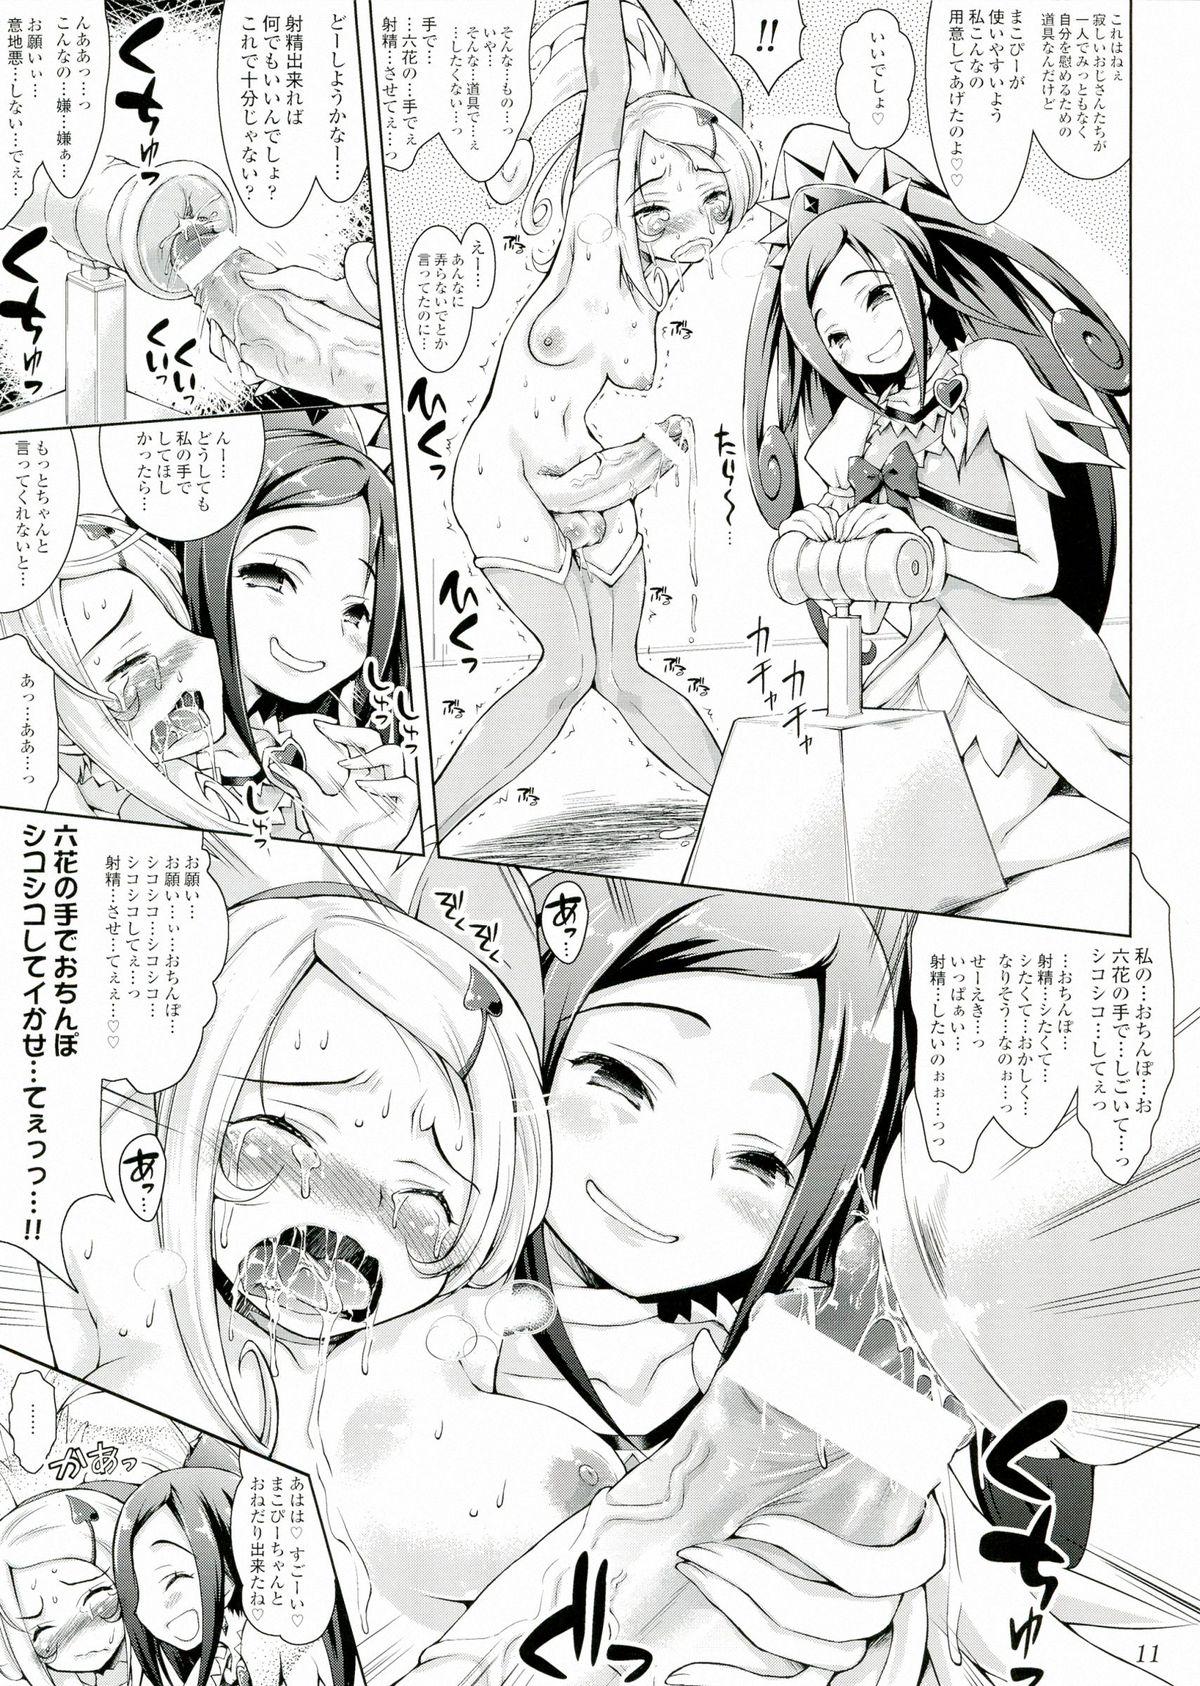 Furry Makopi- ni Haeteta Chinpo wa Rikka ni Ijime rareru to Nando demo Shasei shichau no - Dokidoki precure Erotic - Page 11